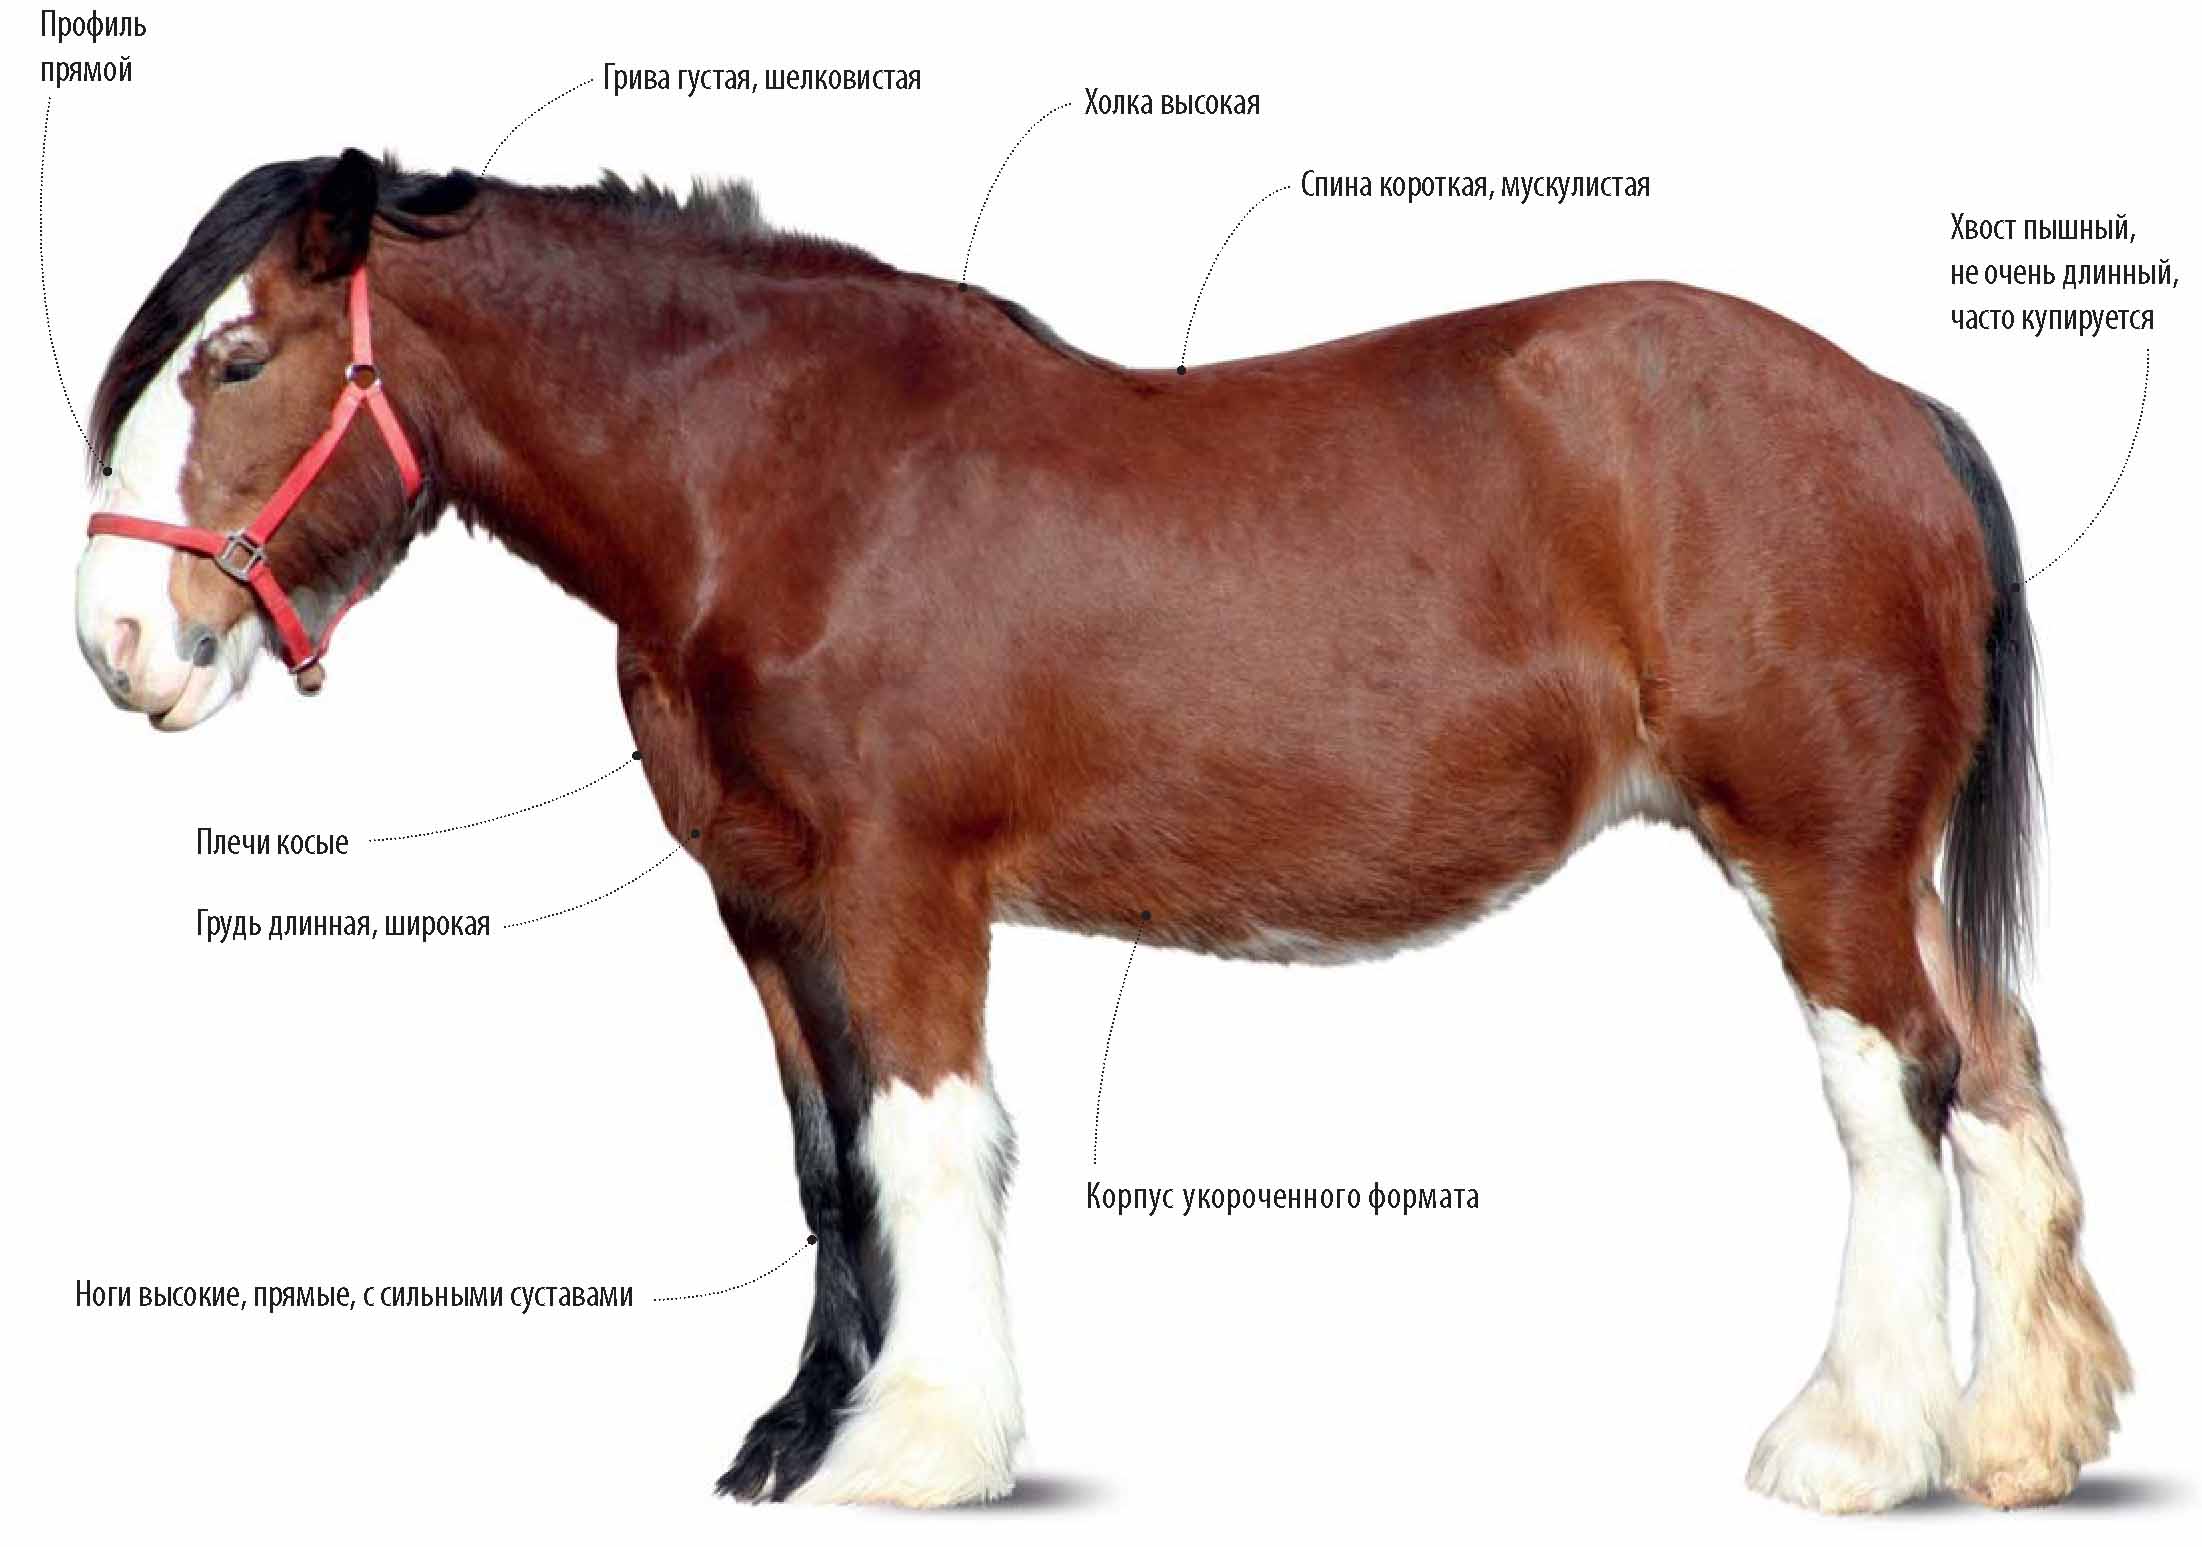 Описание клейдесдальской породы лошадей.